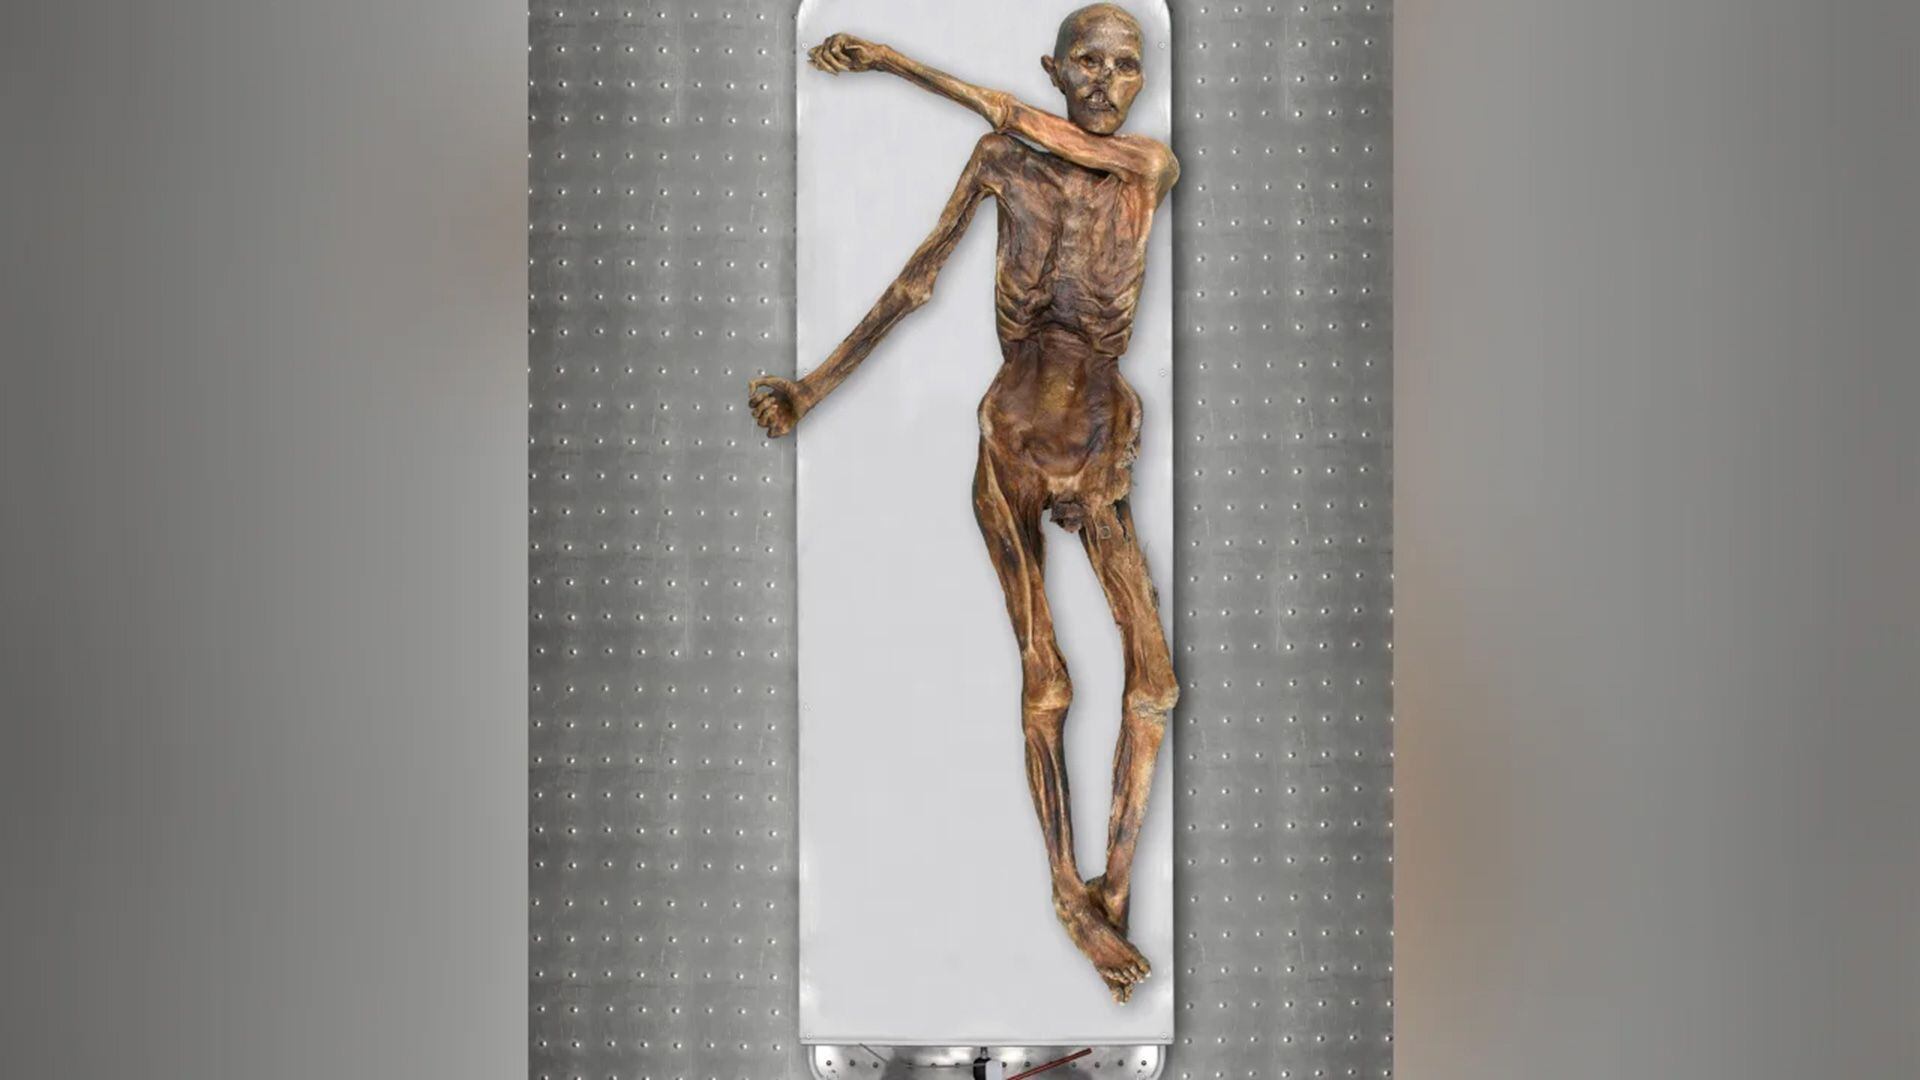 El cuerpo momificado de Ötzi es uno de los hallazgos arqueológicos más estudiados del mundo